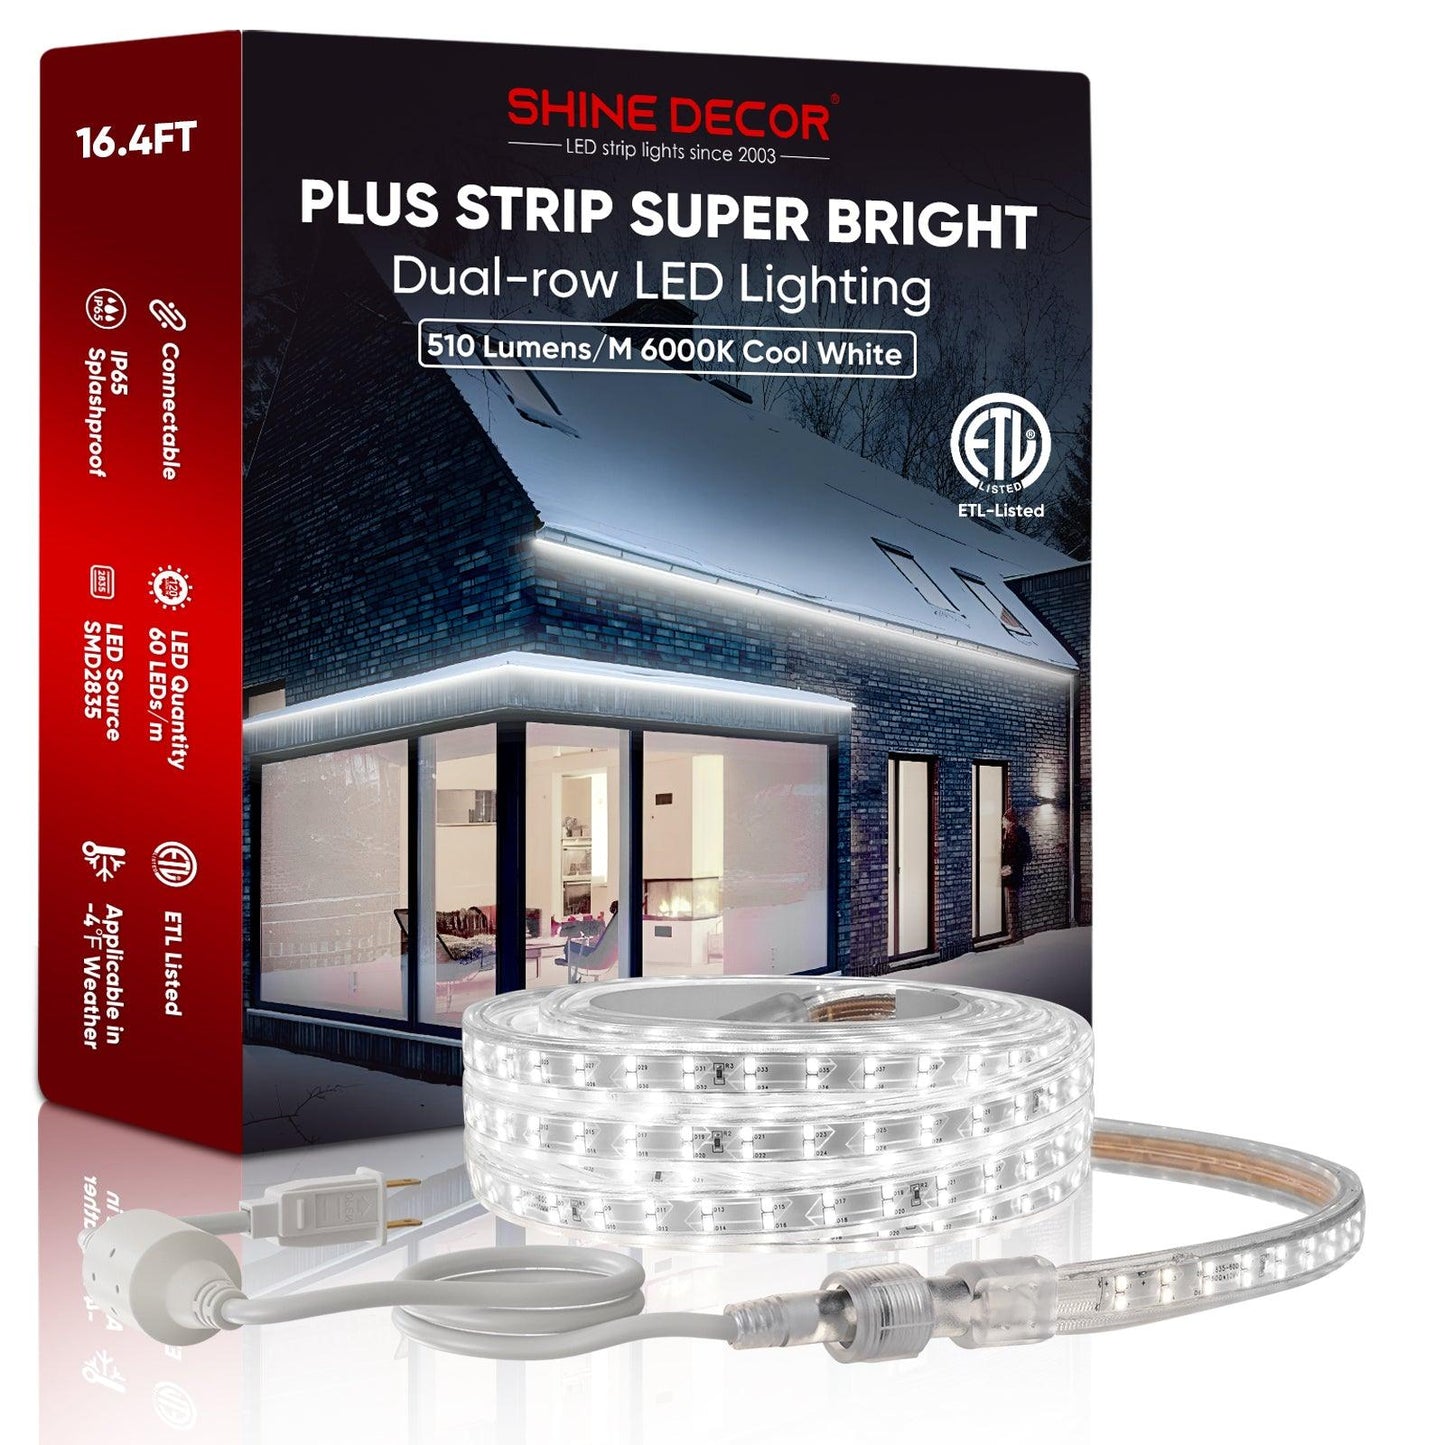 5FT Dimmer Kit For 120V Male To Female Connector Led Strip Neon Light - Shine Decor